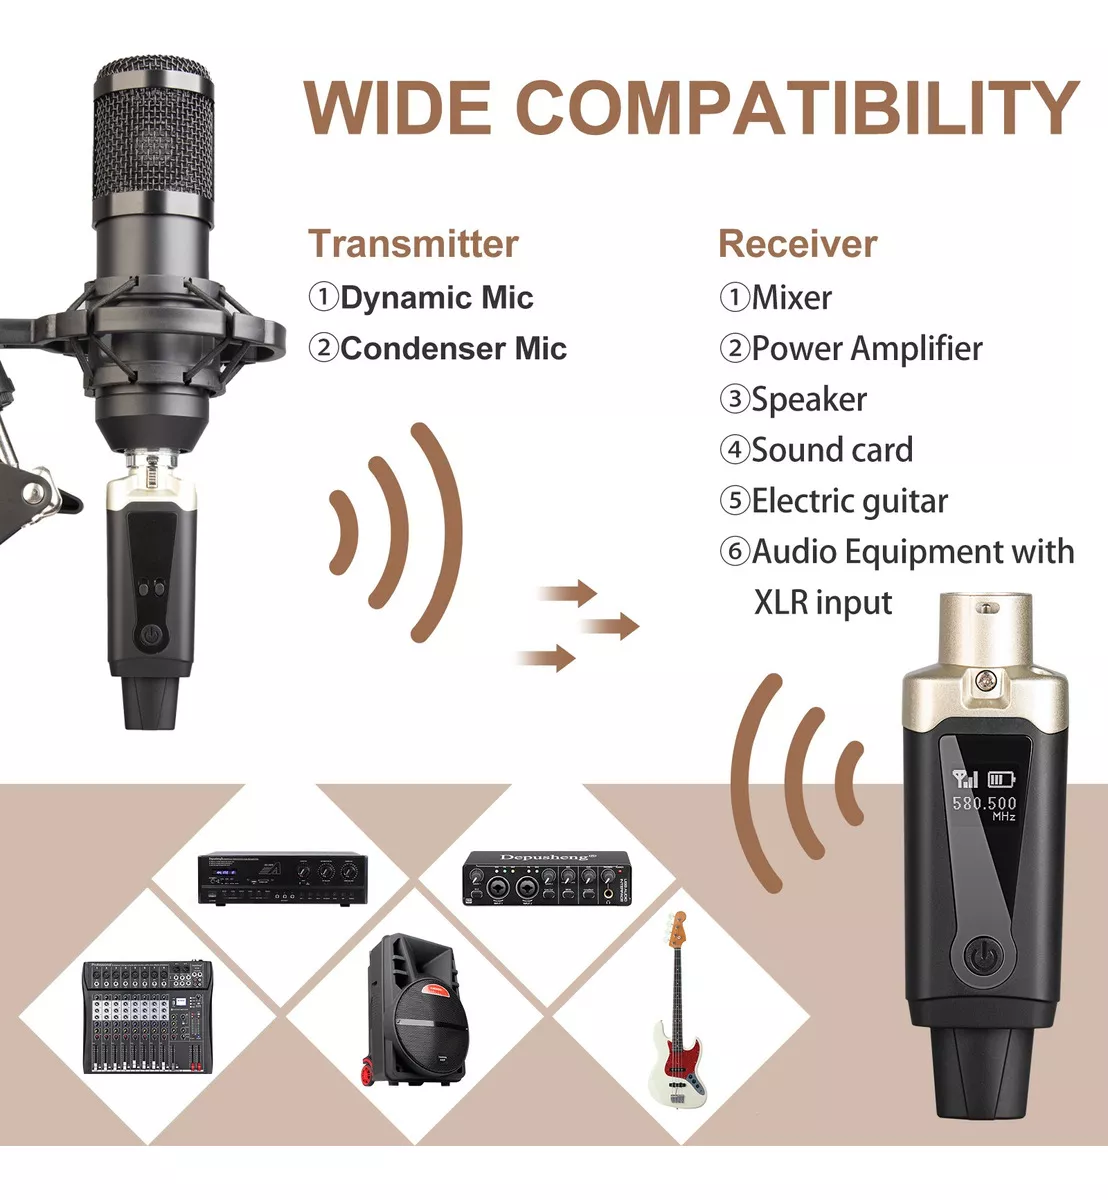 Segunda imagen para búsqueda de transmisor y receptor inalambrico para microfono